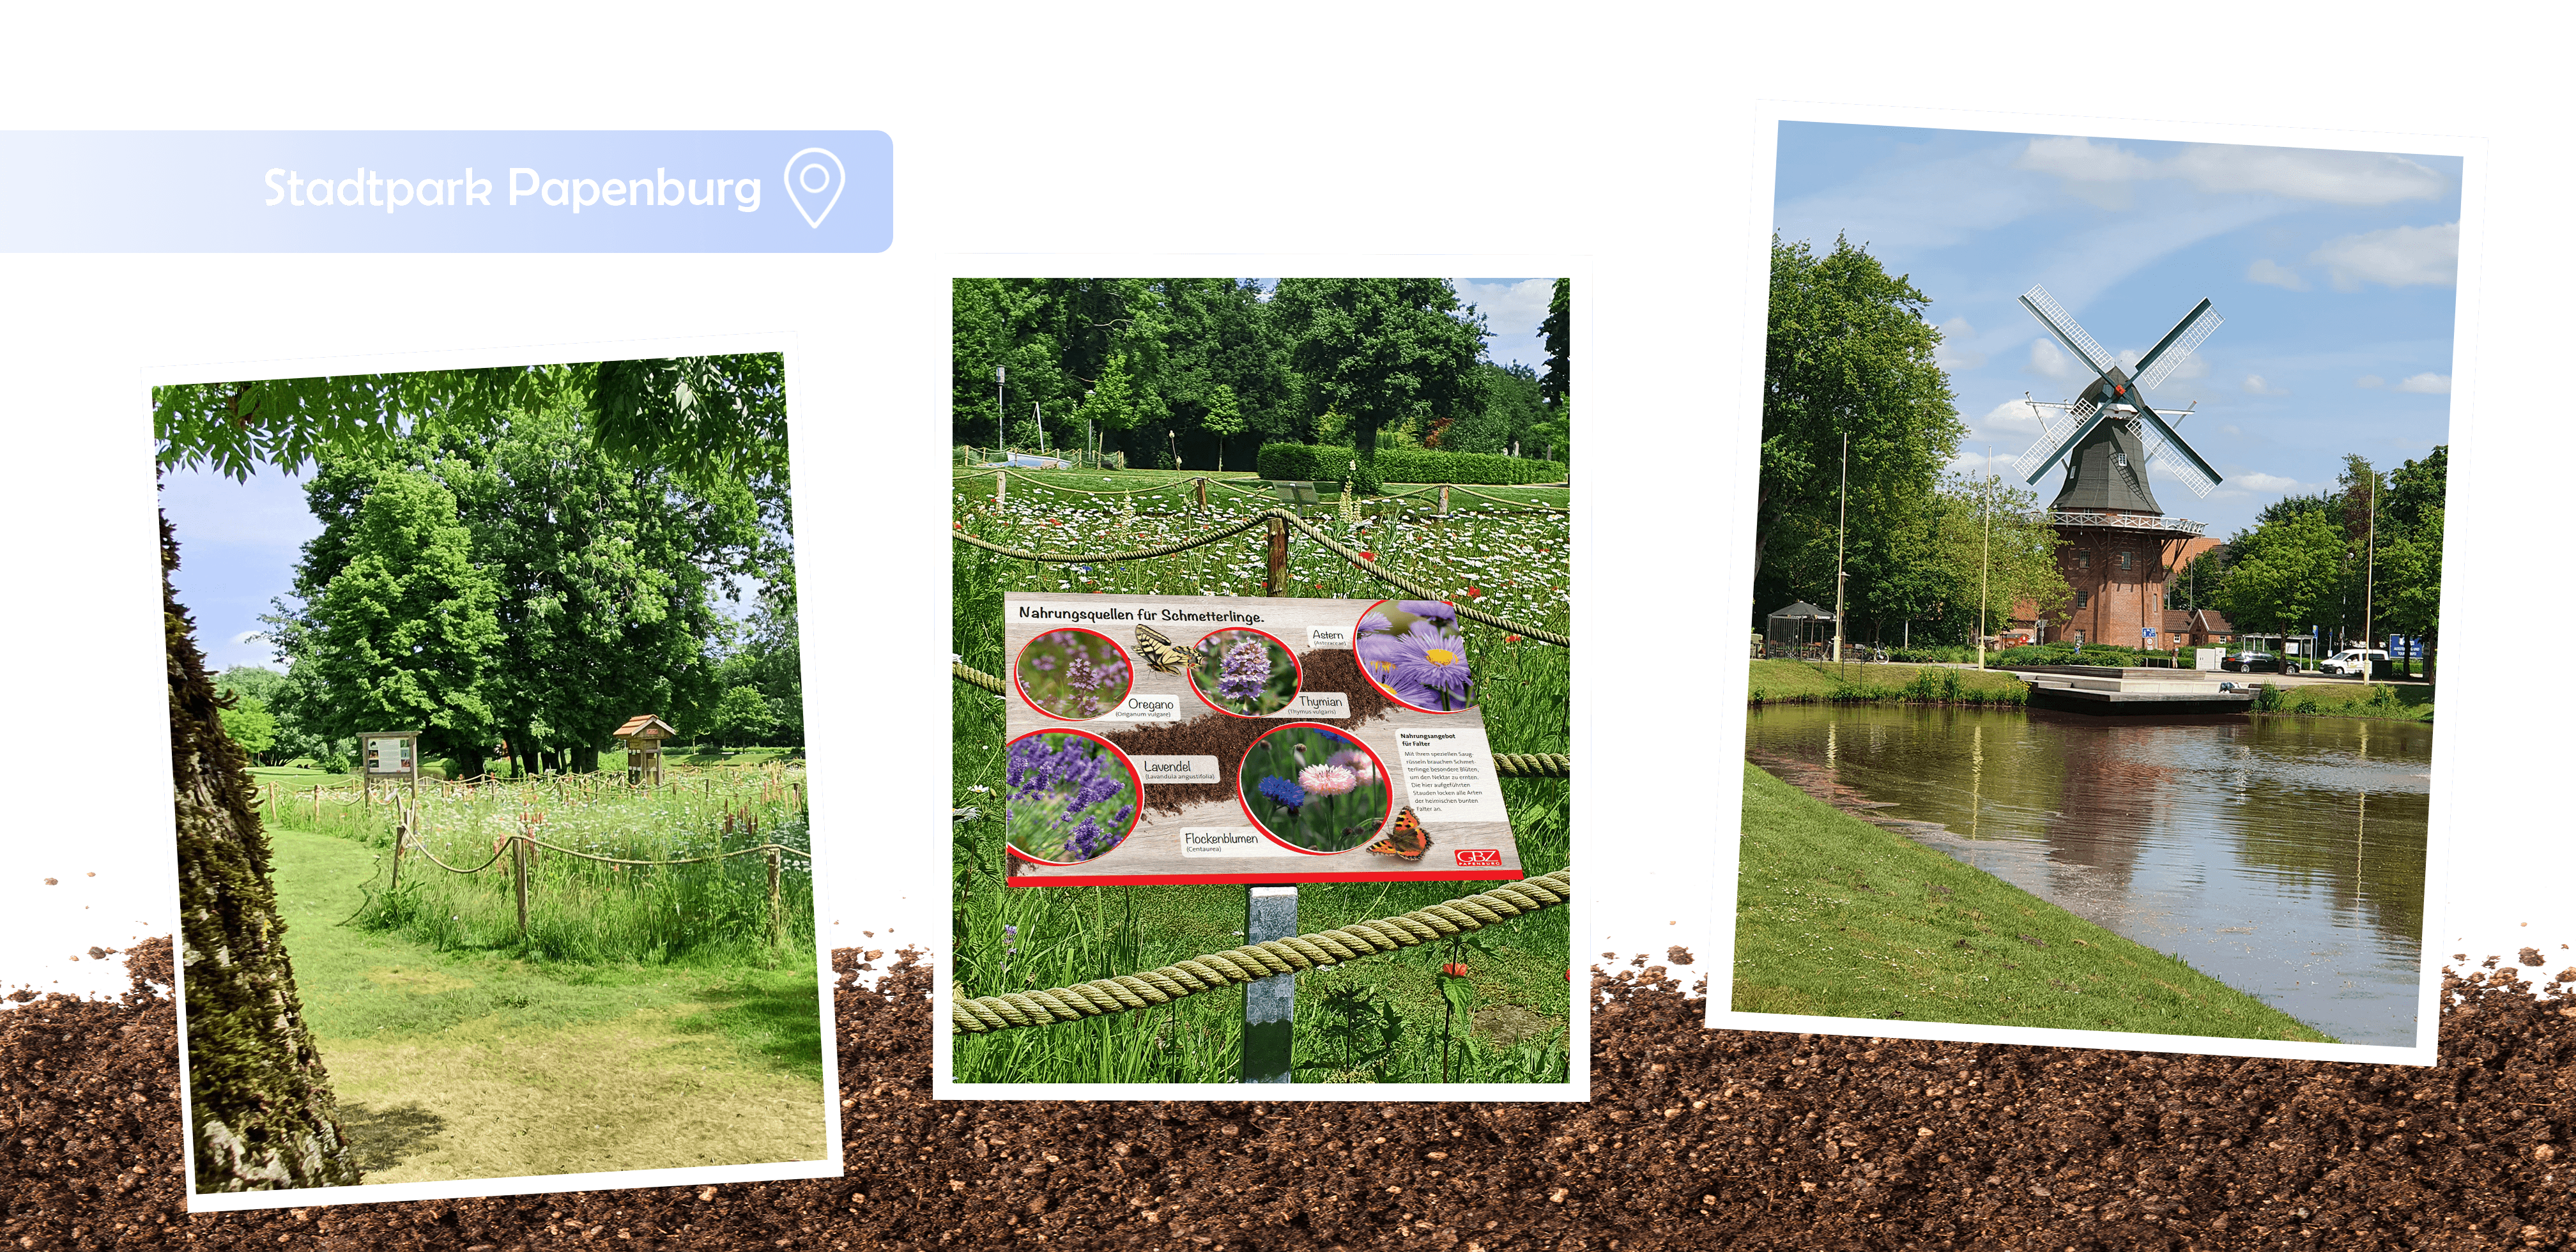 Stadtpark Papenburg, Insektenhotel, Bienenfreundlich, Wildblumenwiese, Blühwiese, Gartenbauzentrale, Papenburg, insektenfreundlich, Insektenhotel, GBZ, Umwelt, Naturschutz, Engagement